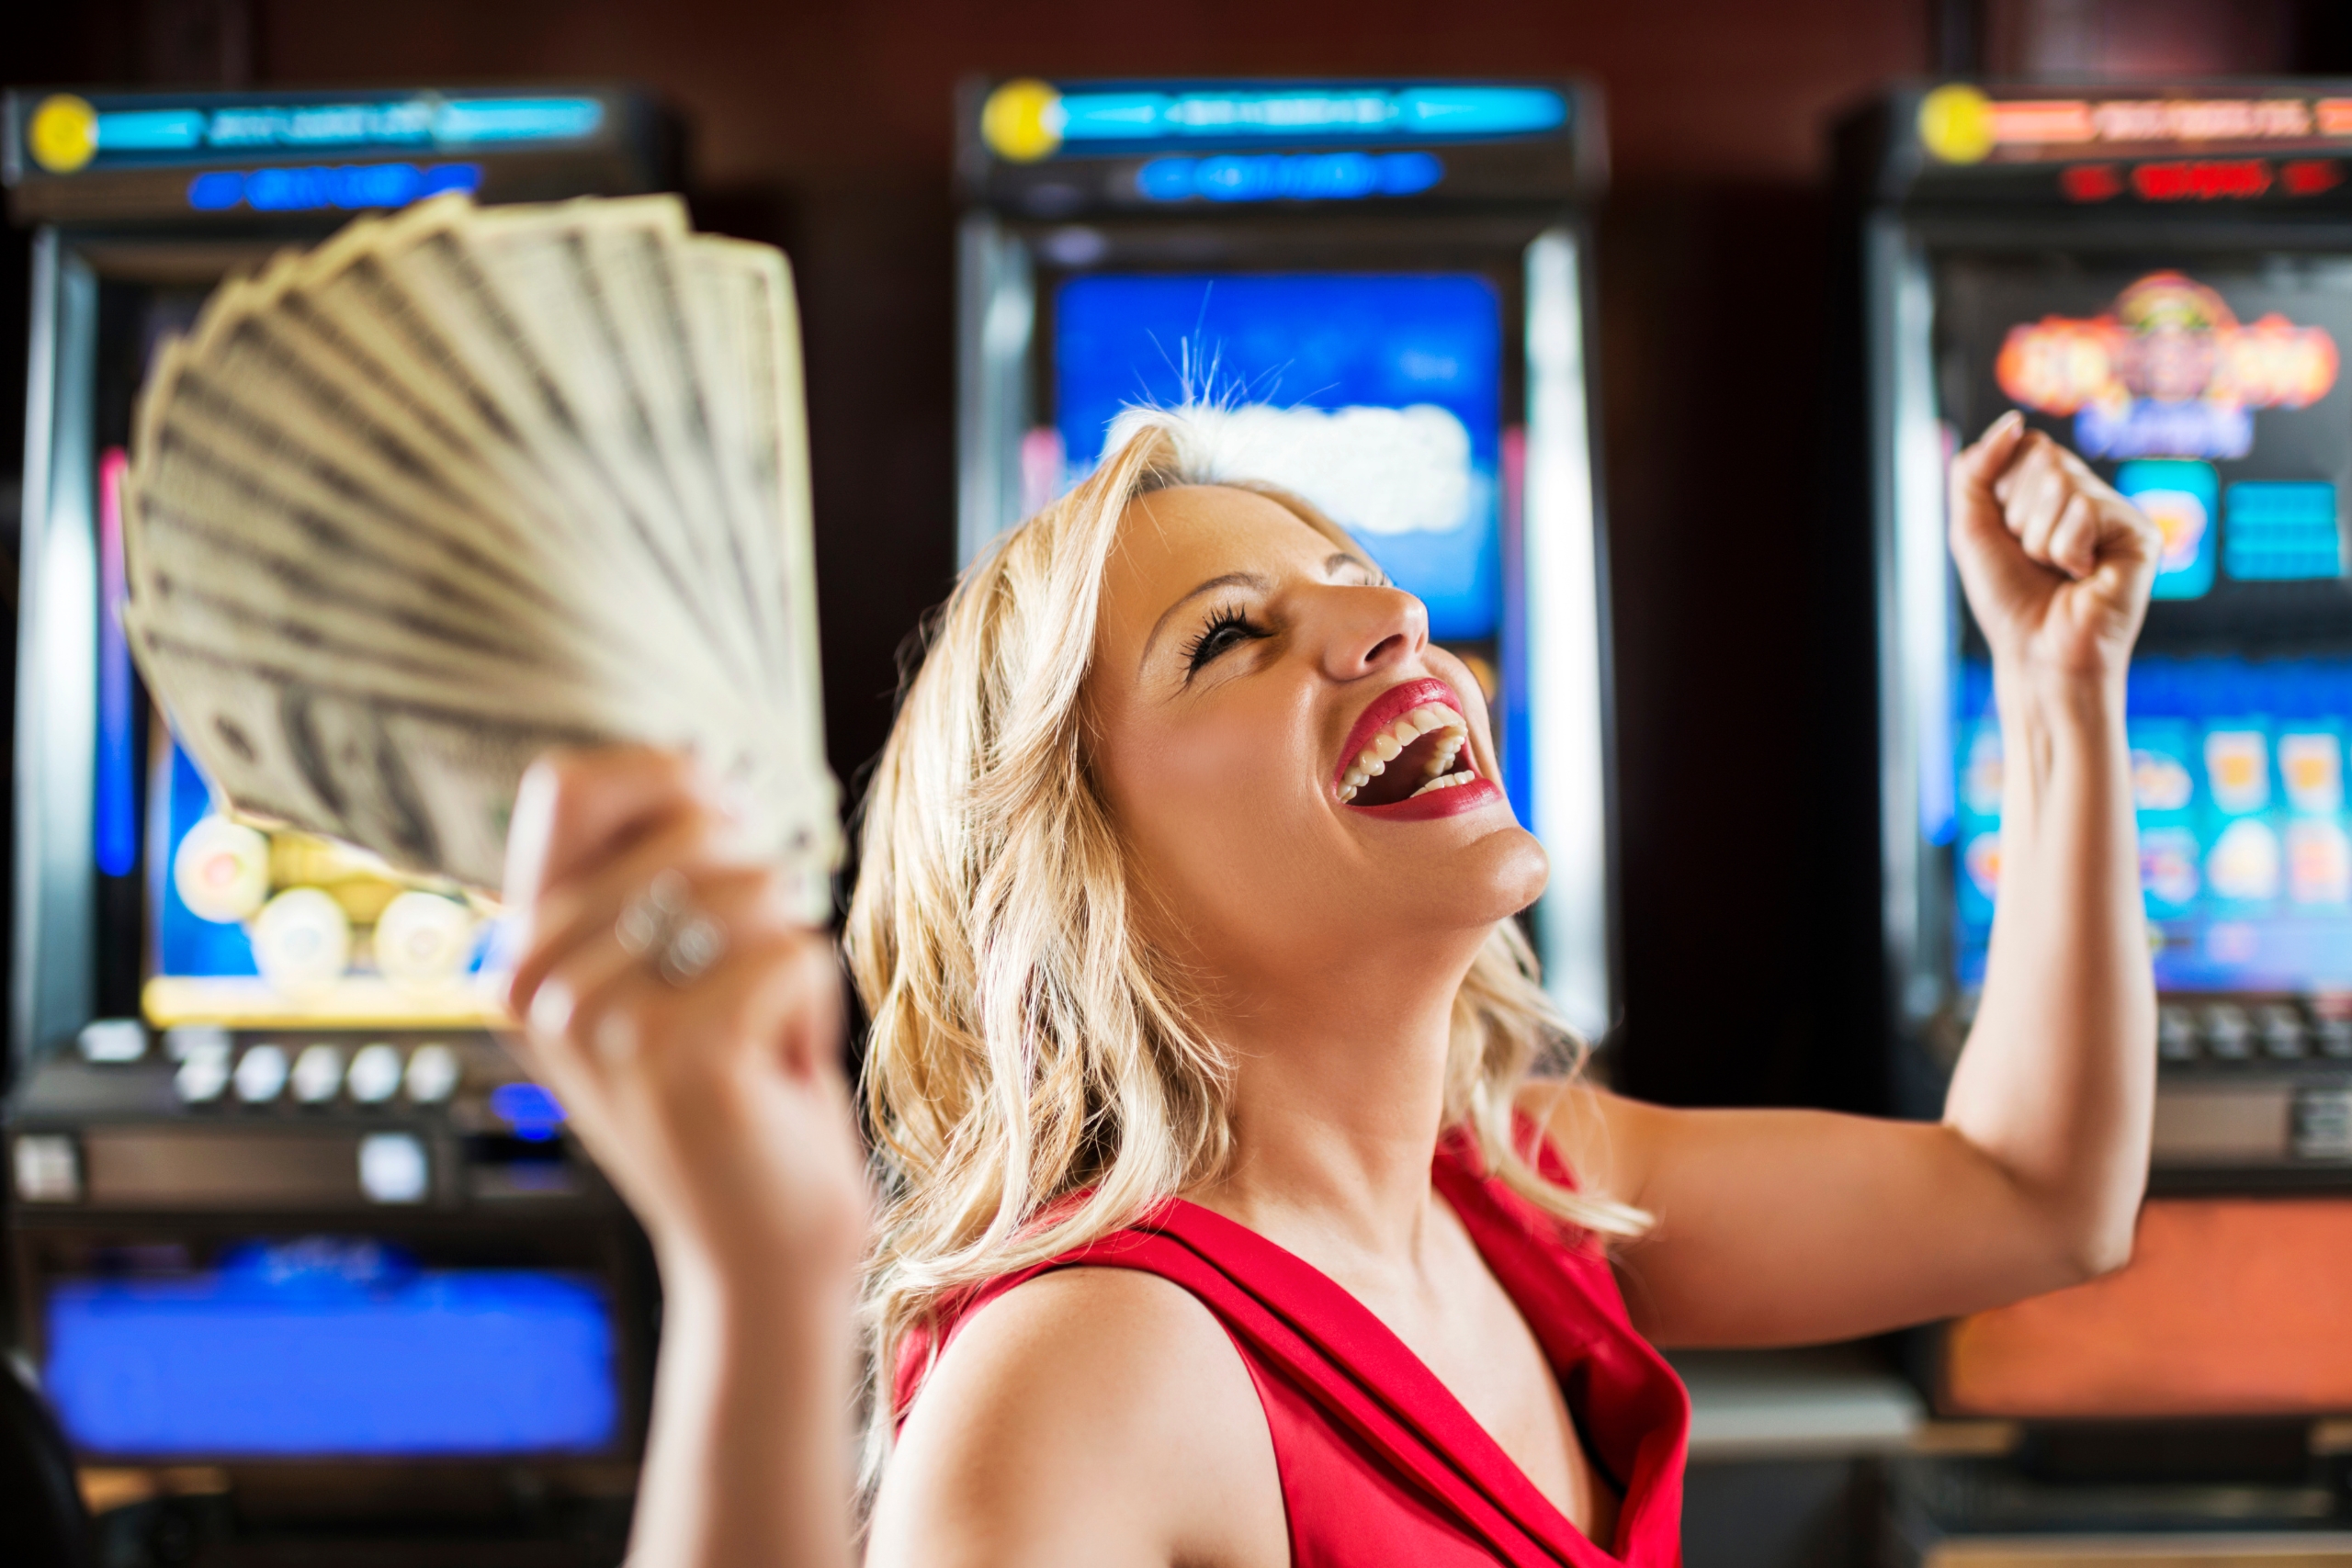 Woman in casino winning at slot machine.